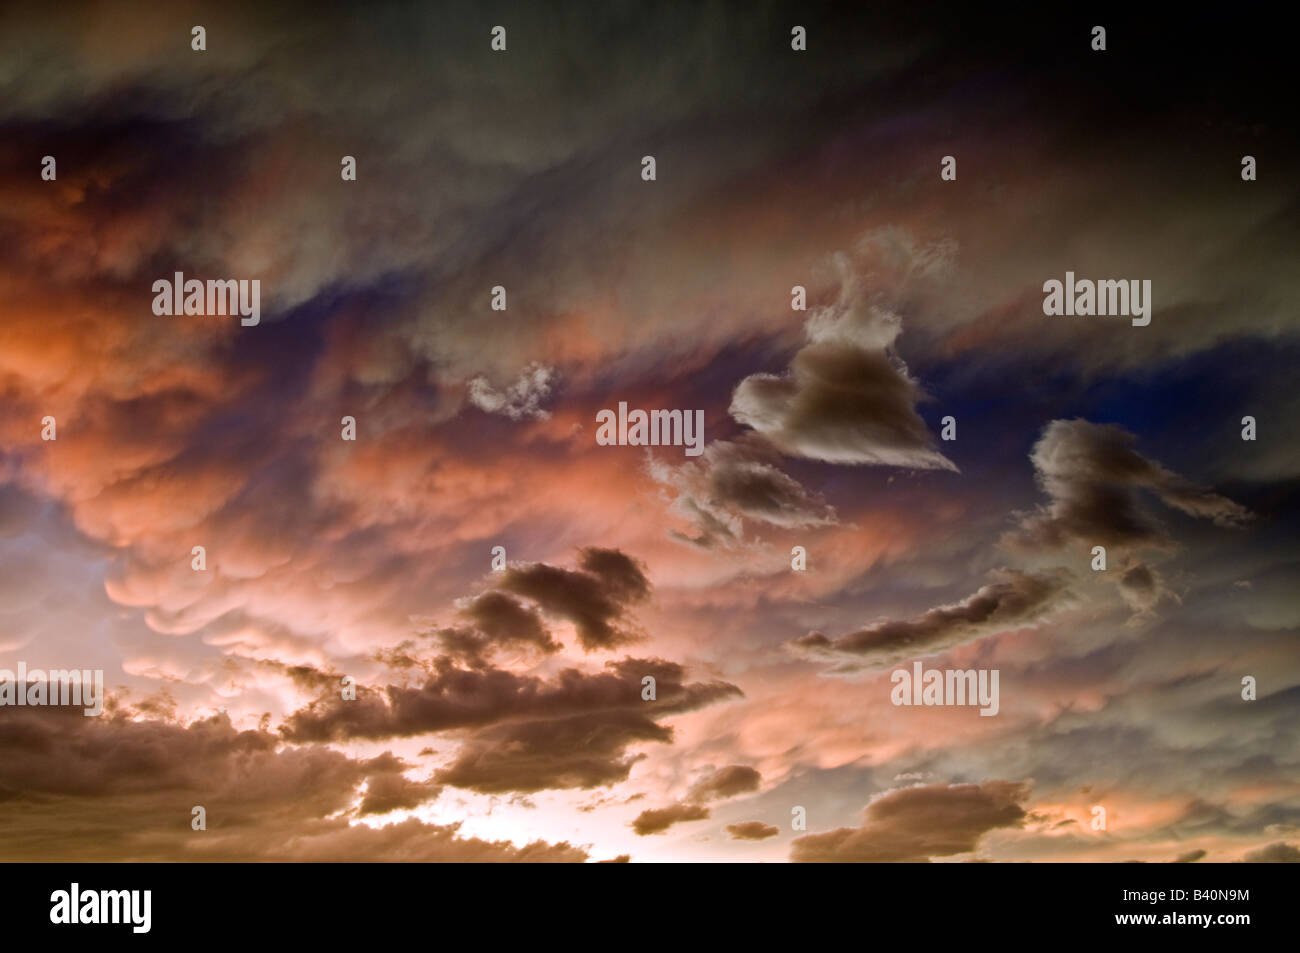 Con i colori di un dipinto di Monet, la violenta tempesta nubi del Midwest,usa produrre un cuore in mezzo alla tempesta. Foto Stock